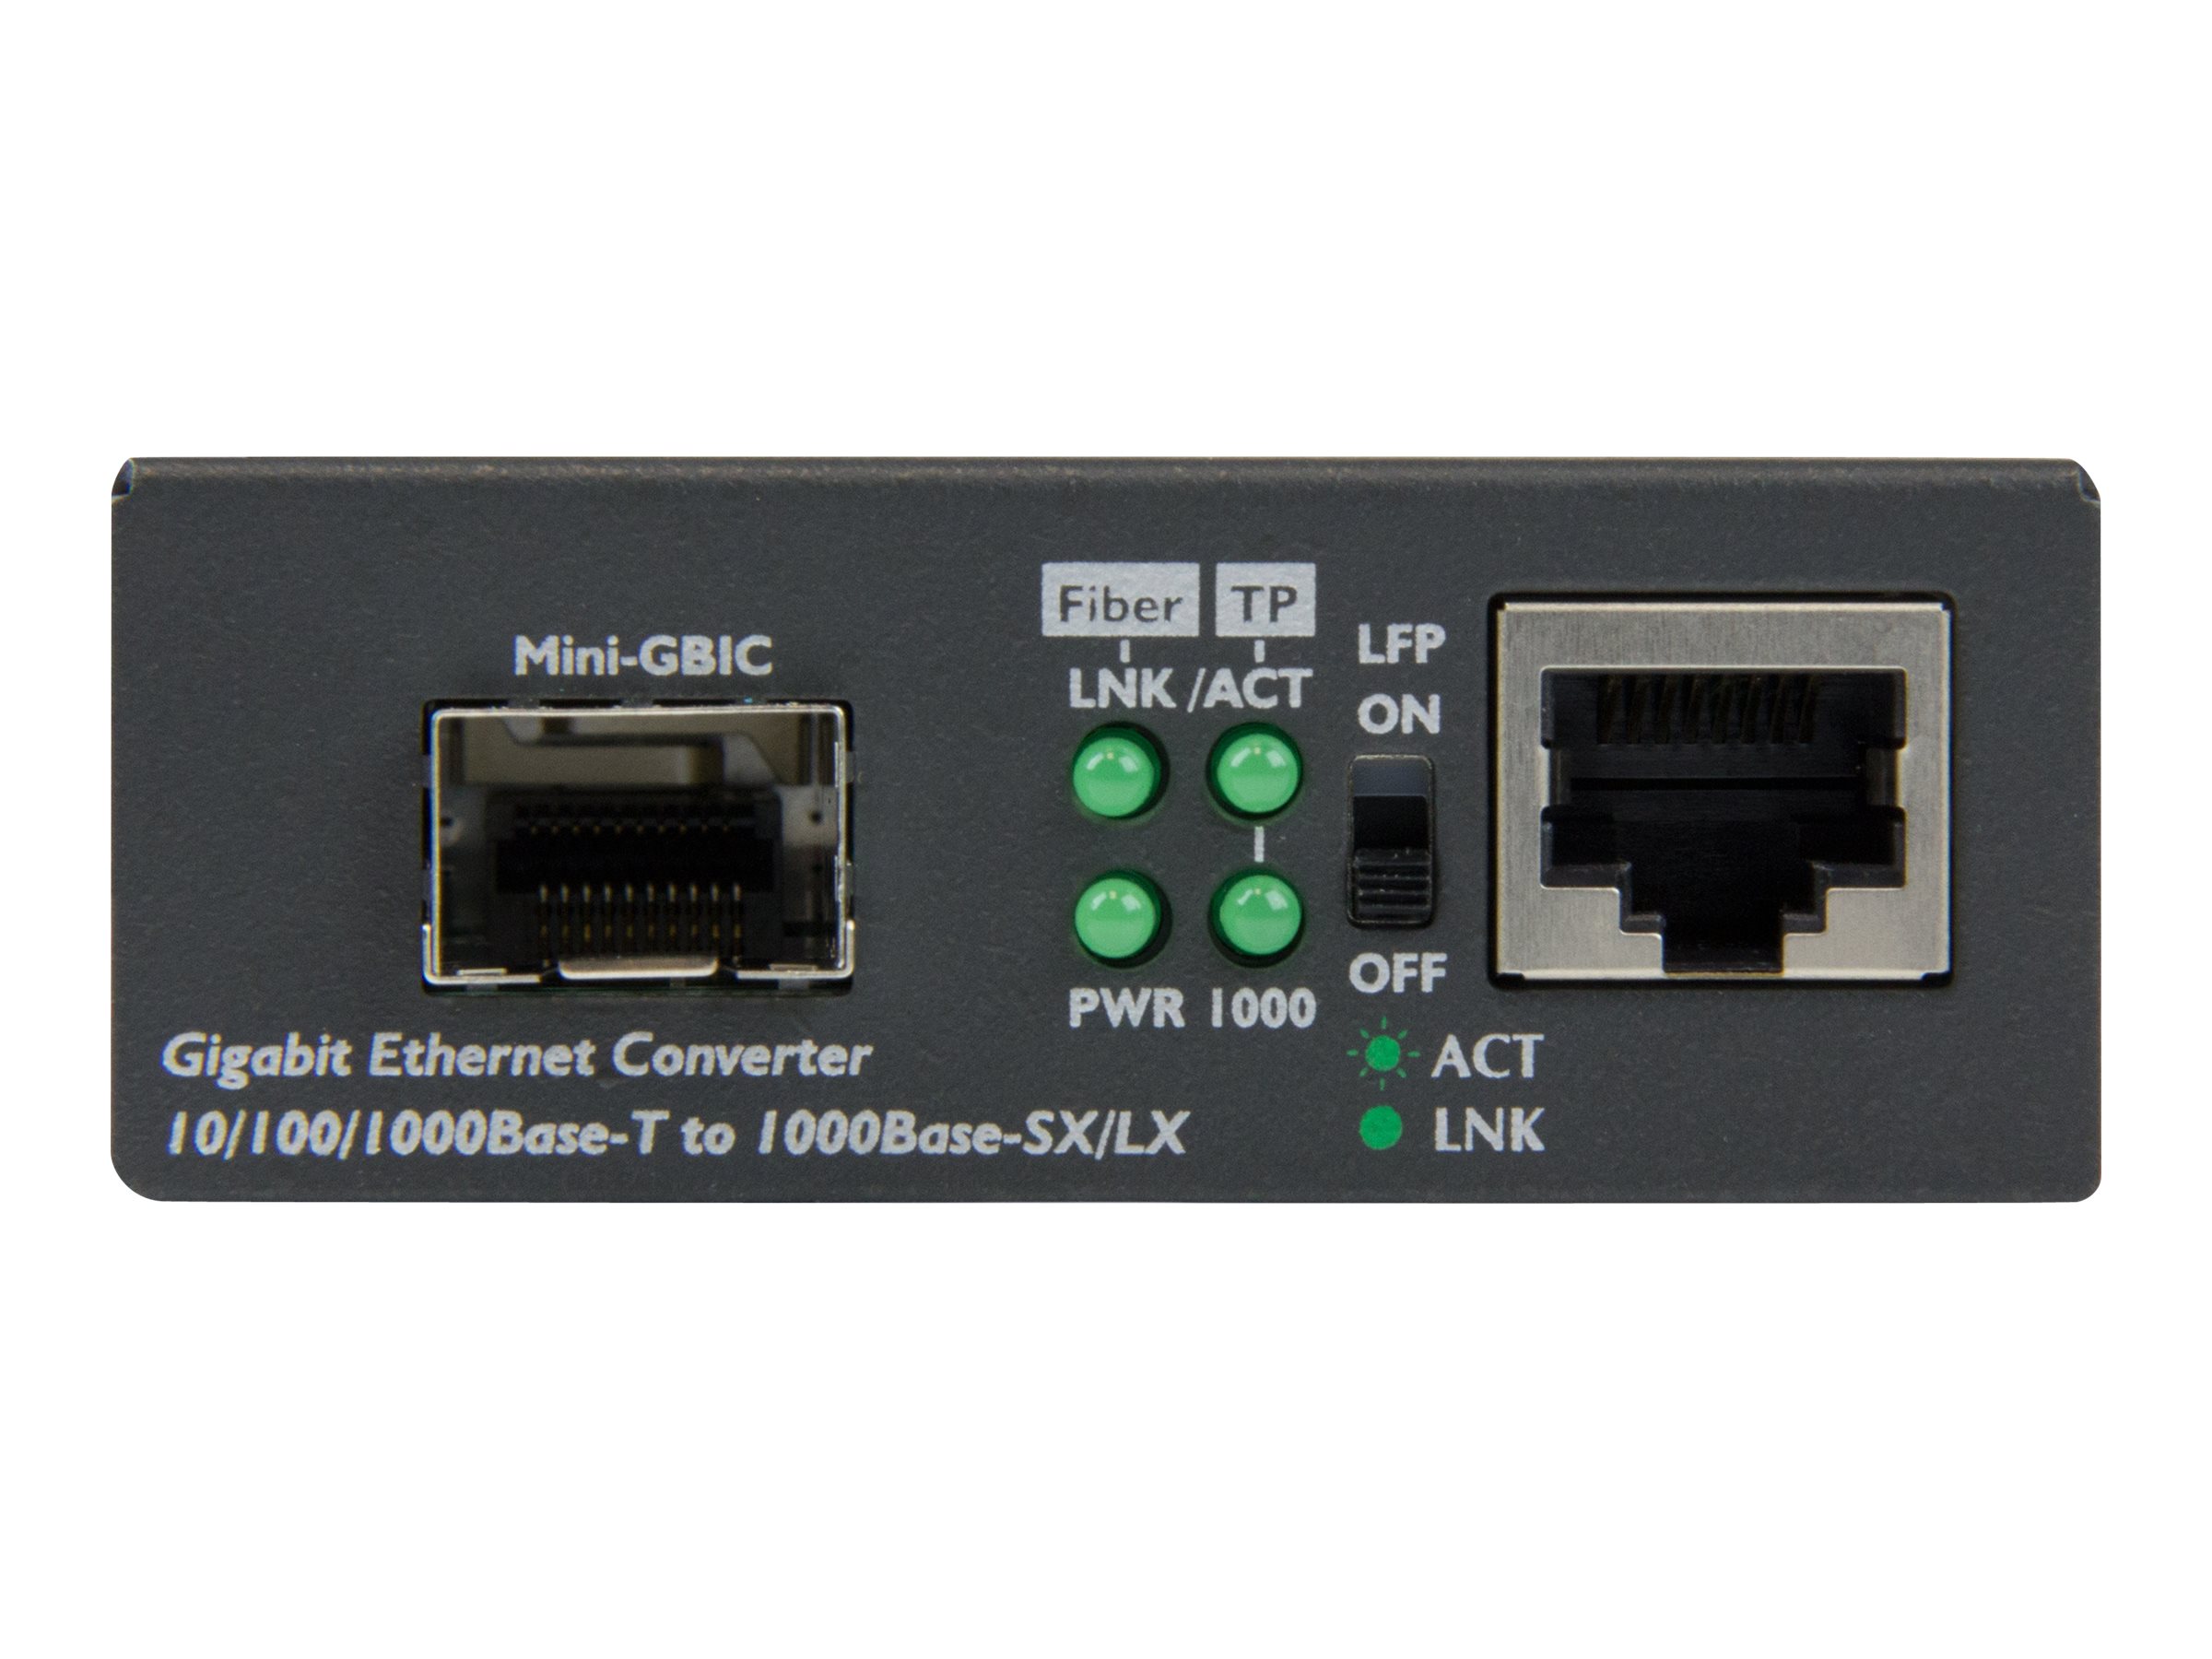 StarTech.com Convertisseur RJ45 Gigabit Ethernet sur Fibre Optique avec SFP Ouvert - 1000Mbps MonoMode/MultiMode - Convertisseur de média à fibre optique - 1GbE - 10Base-T, 1000Base-LX, 1000Base-SX, 100Base-TX, 1000Base-T - RJ-45 / SFP (mini-GBIC) - pour P/N: GLCLHSMDSTTA, GLCSXMMDST, GLCSXMMDSTT, GLCTEST, MASFP1GBTXST, SFP1GELXST - MCM1110SFP - Transmetteurs optiques